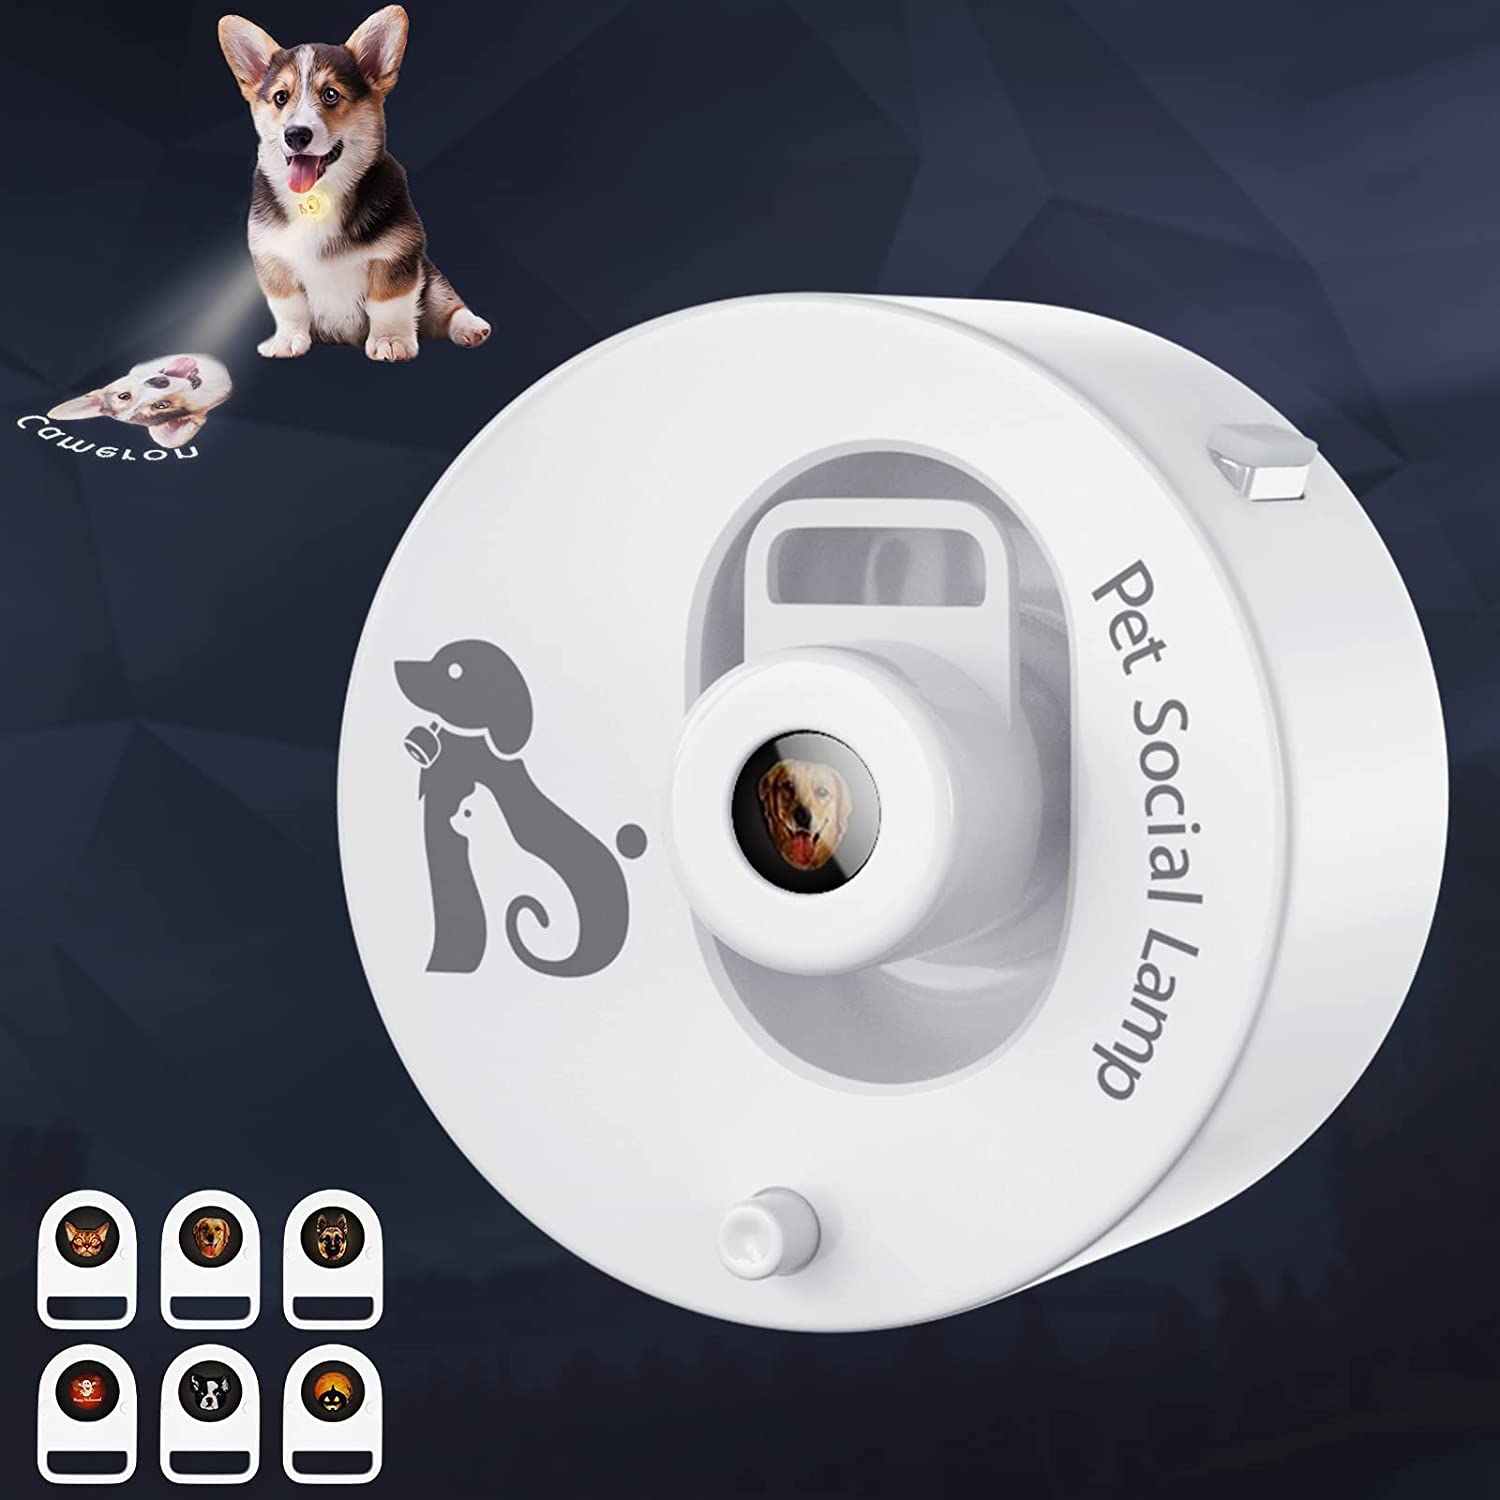 چراغ قلاده سگ با اسلایدهای پروجکشن ( مجهز به تراشه مدار مستقل و باتری هوشمند ) برند: Pet Social Lamp   کد : GH 510